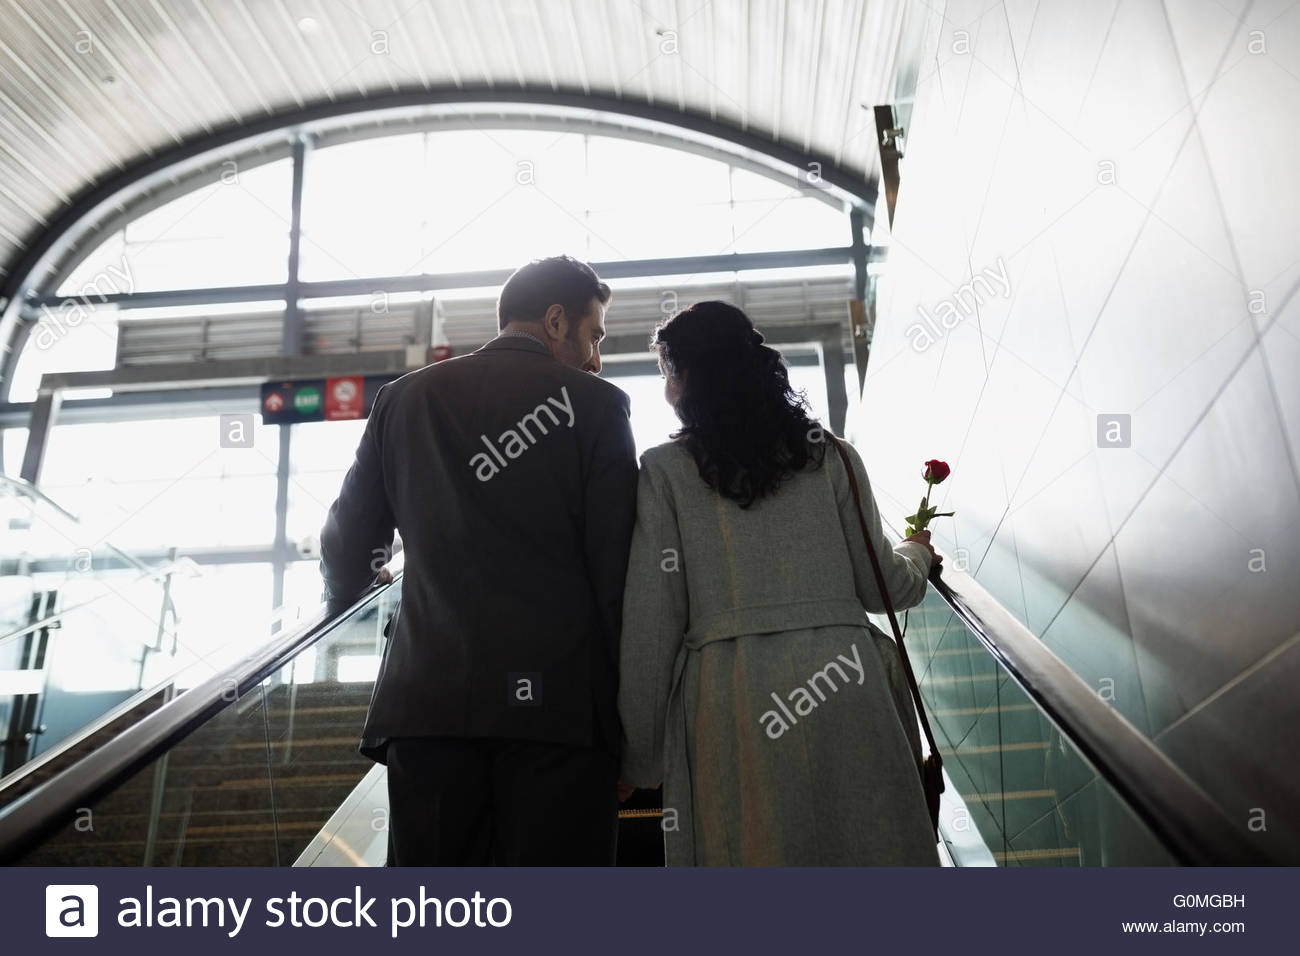 Par ascendente escalera mecánica en la estación de tren Foto de stock